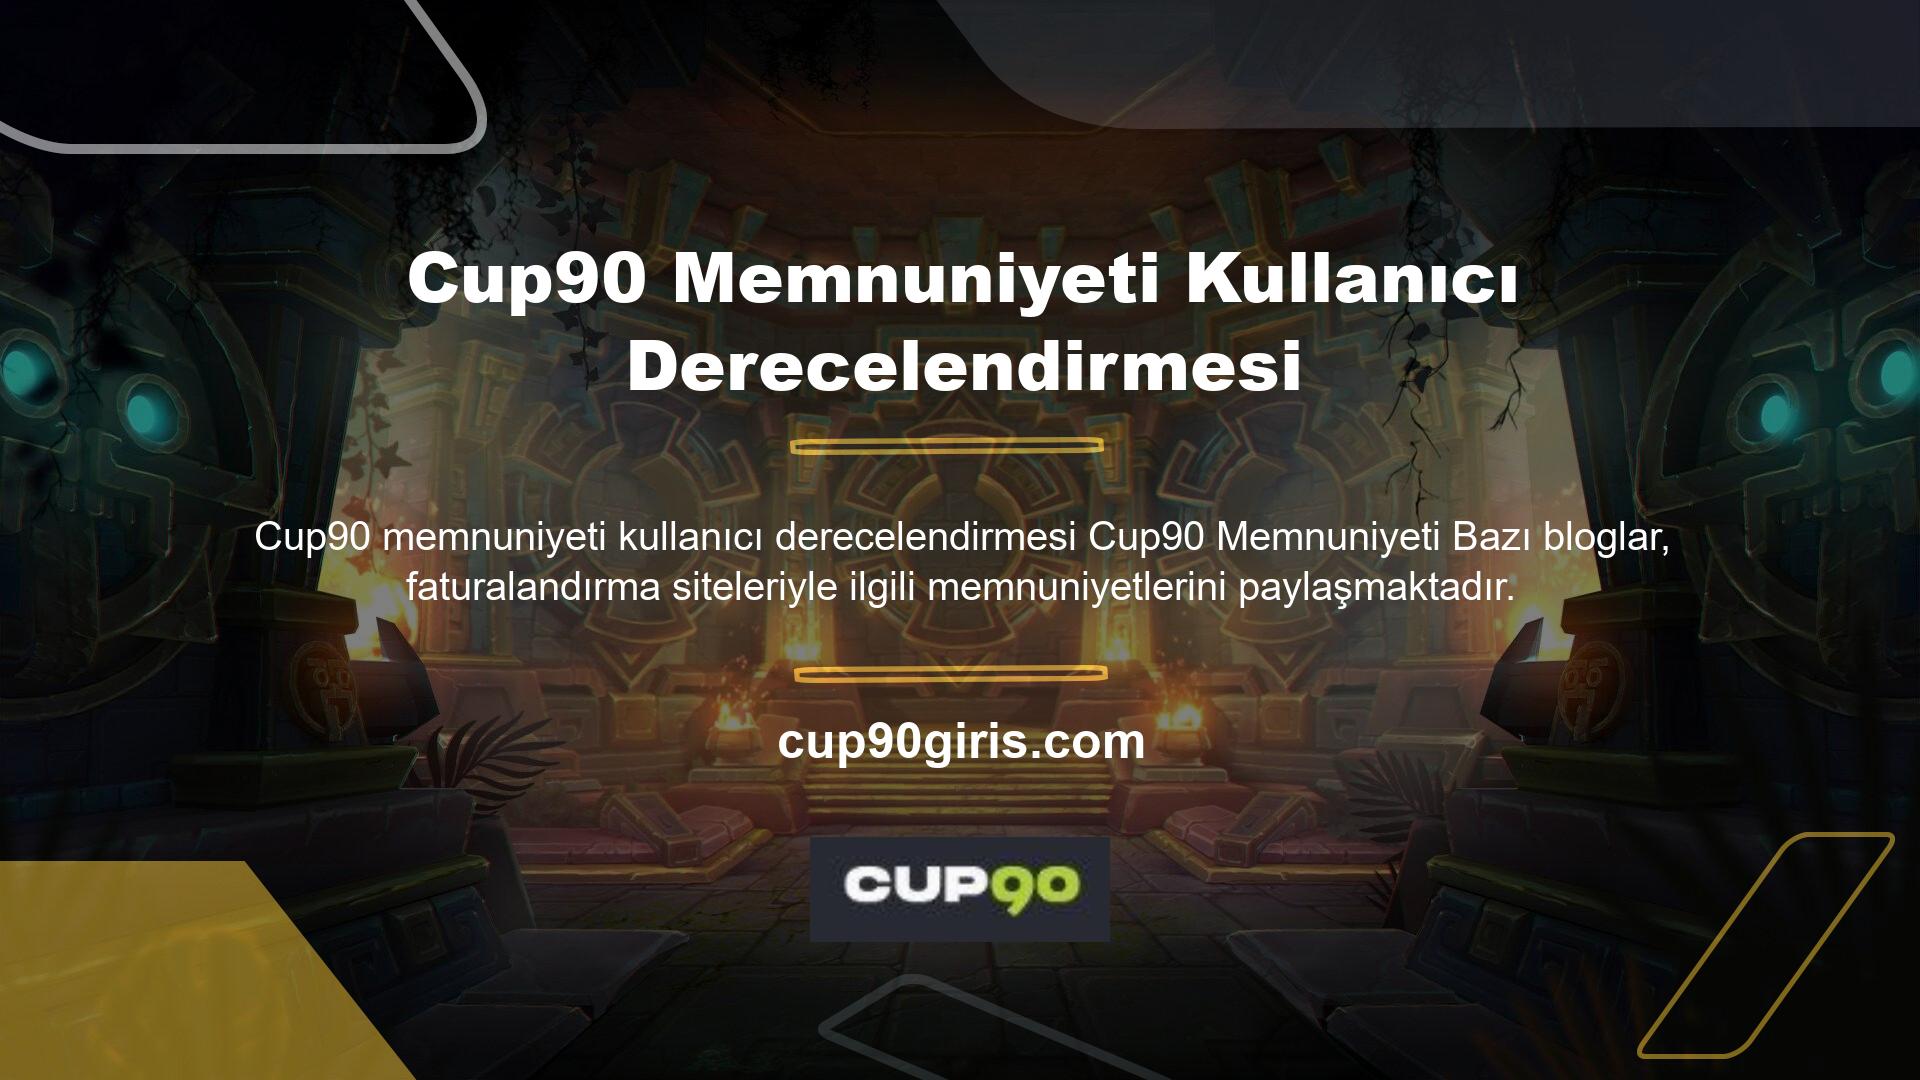 Çeşitli web siteleri, Cup90 kullanıcı incelemelerinin memnuniyetini araştırdı